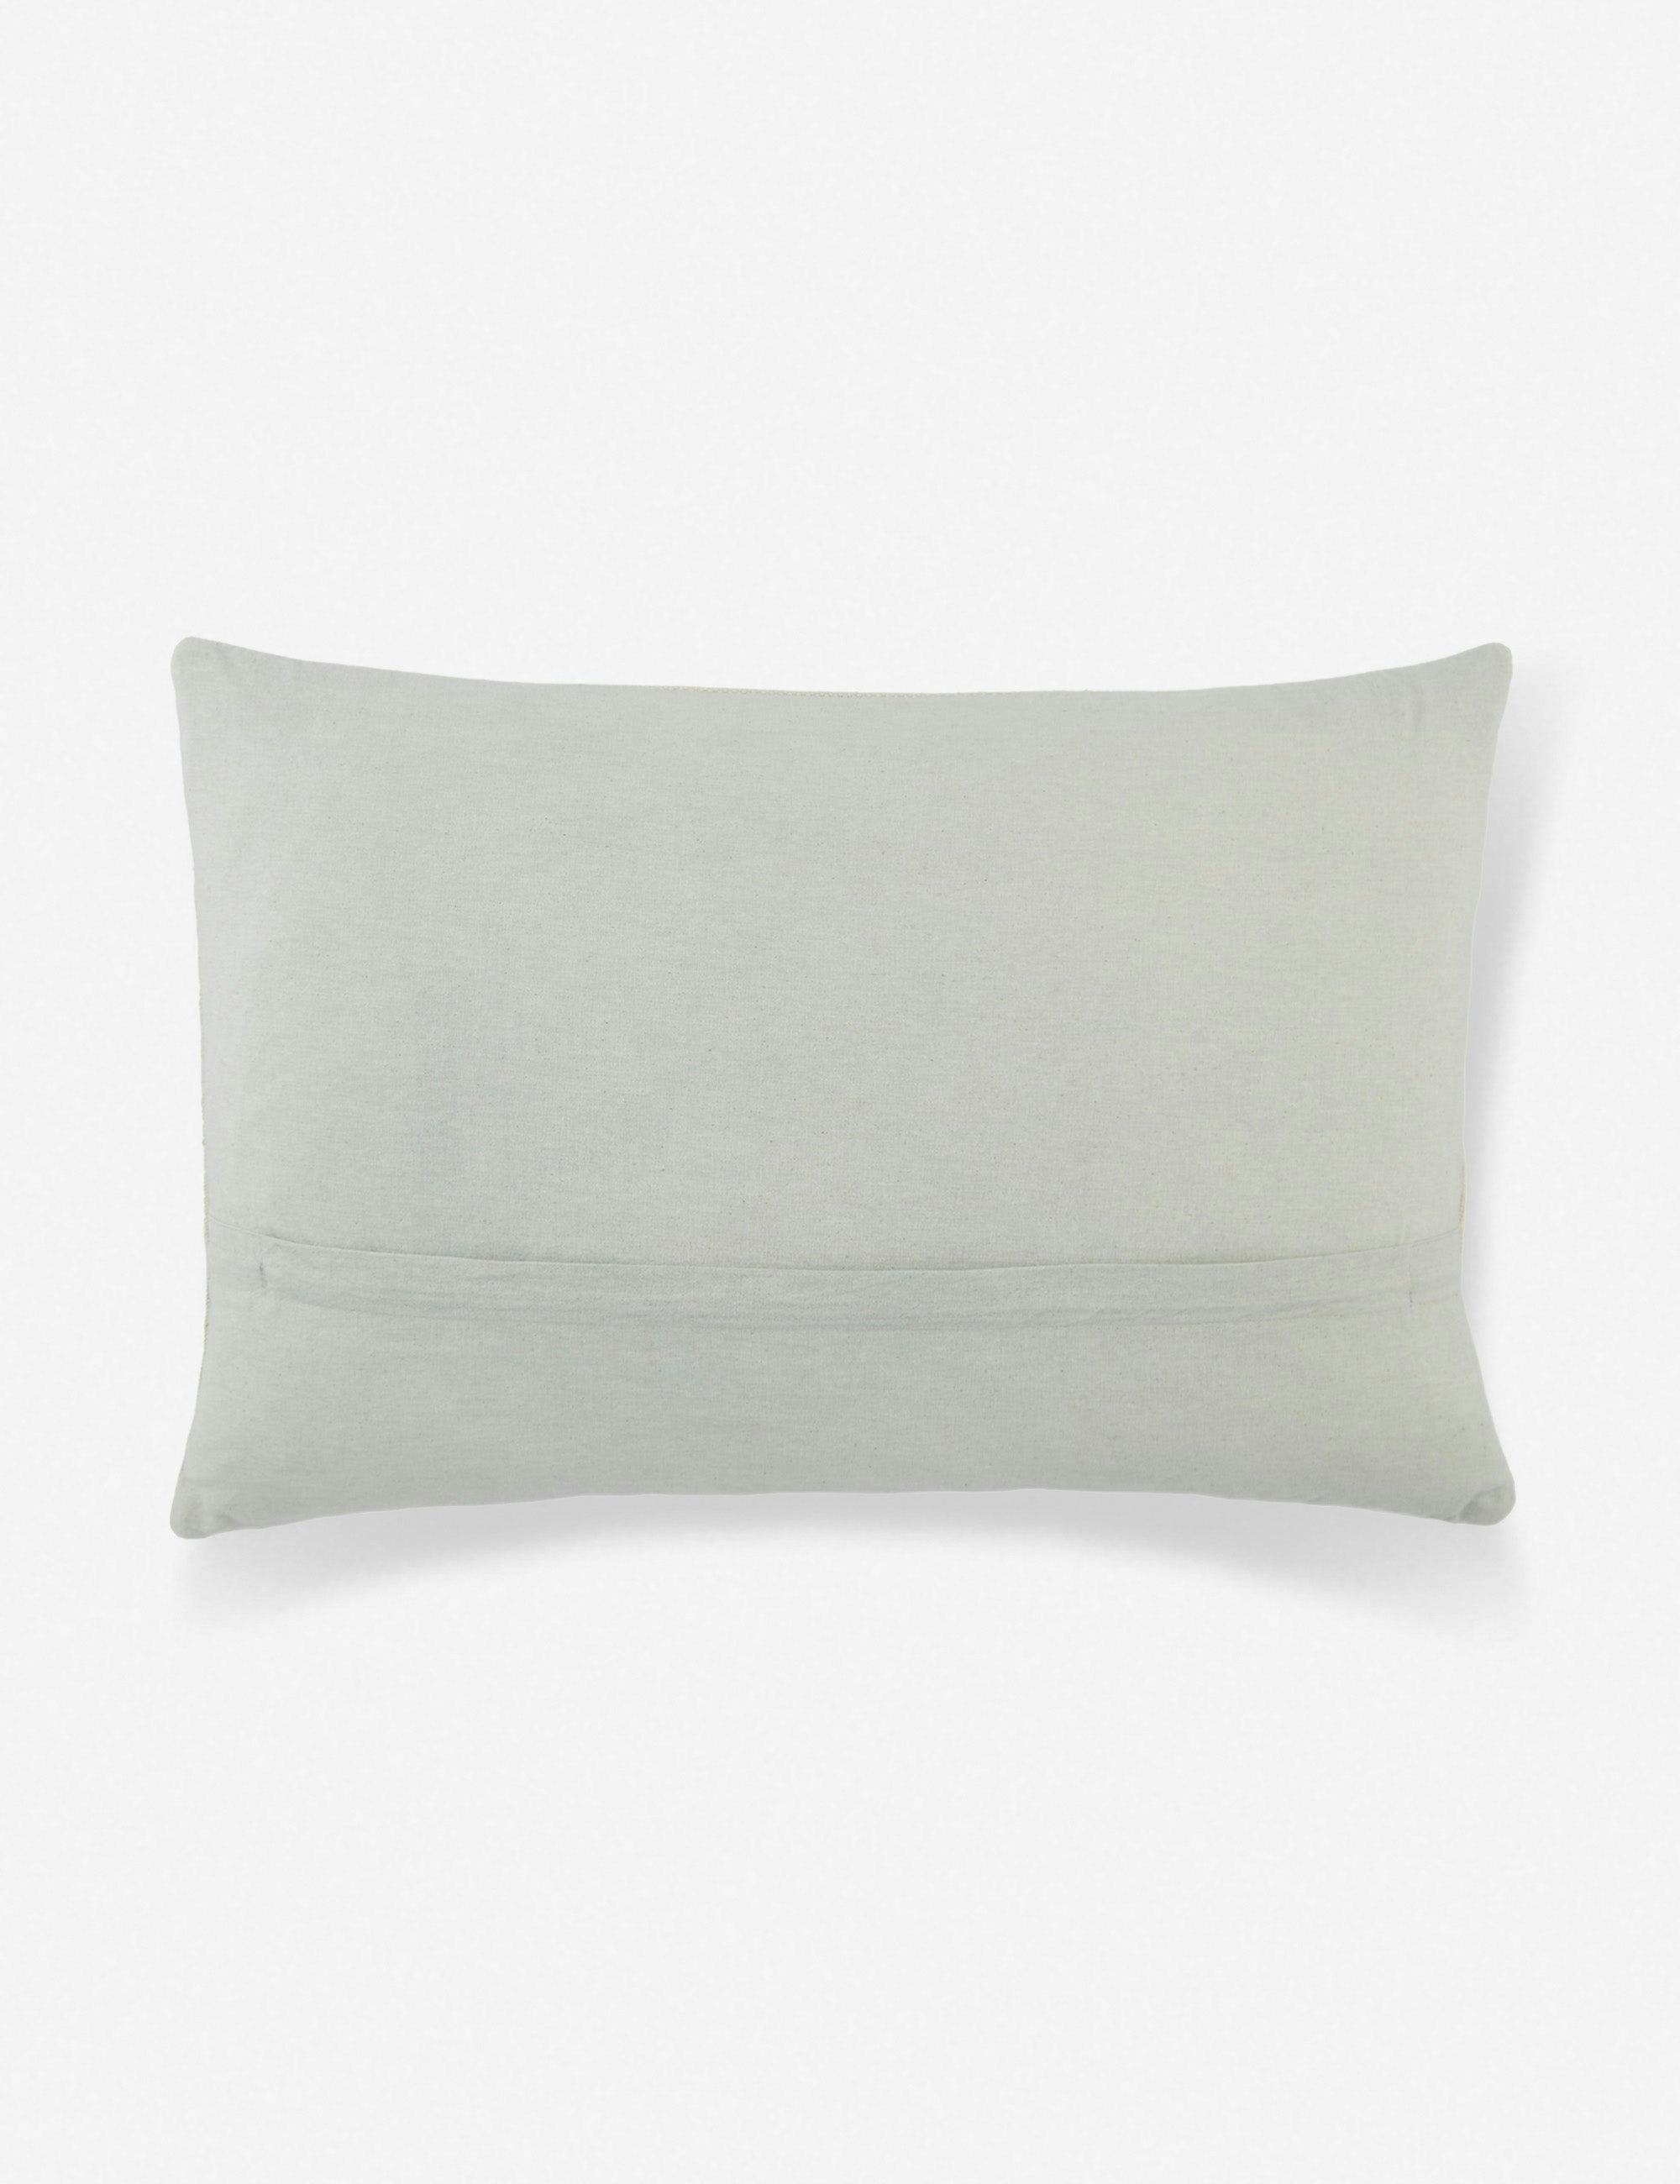 Lina Abstract Linear Light Gray and Cream Lumbar Pillow